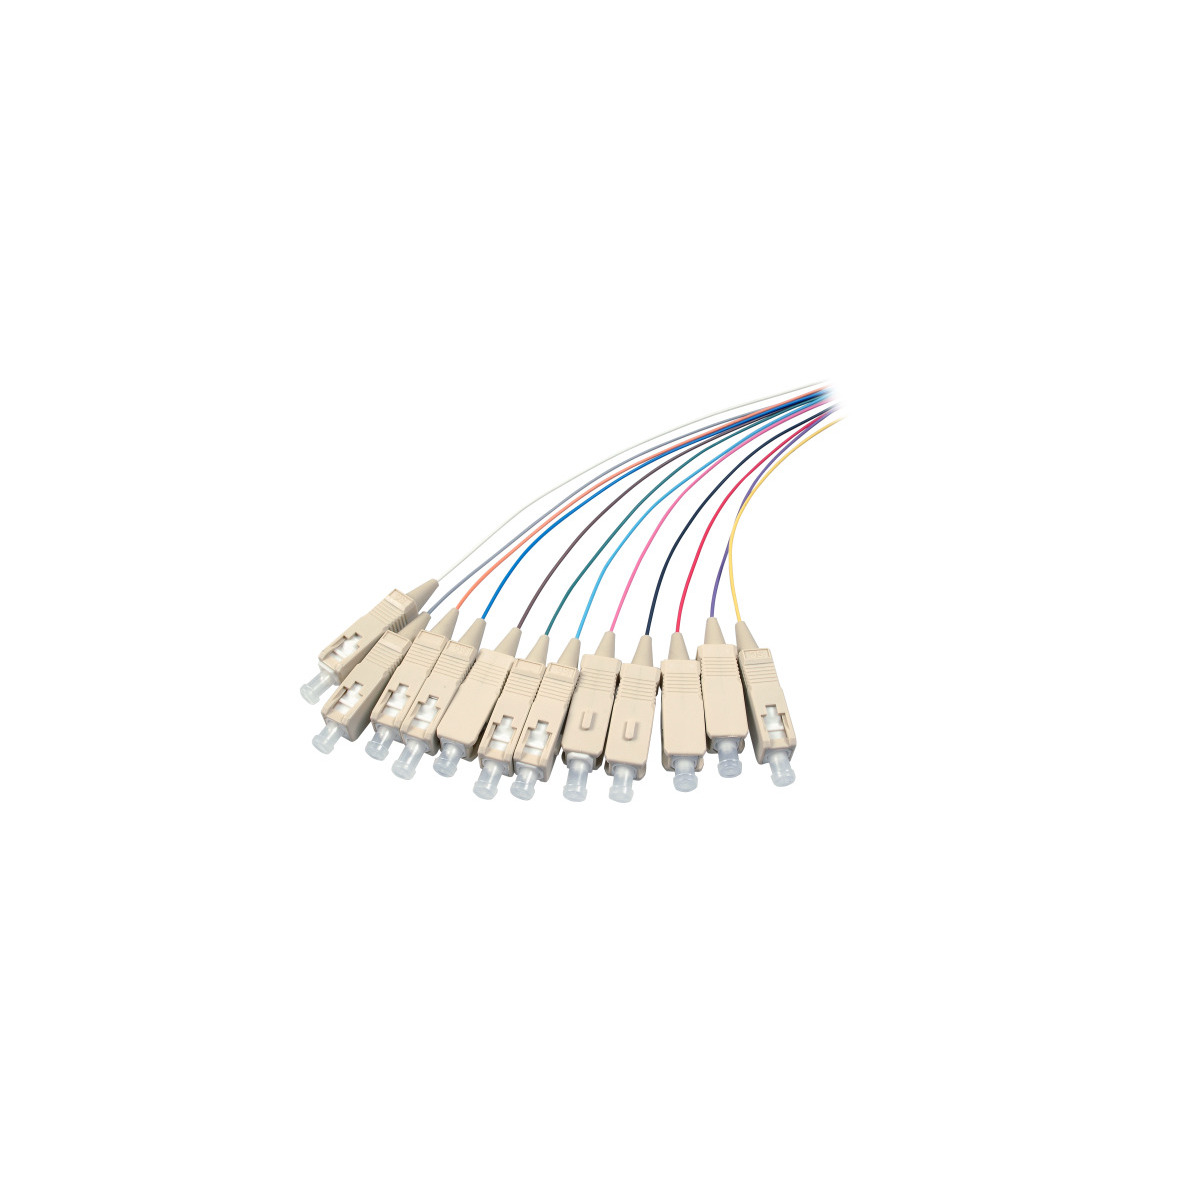 2 Kabel COMMUNIK m Pigtails SC Faserpigtails, / Glasfaserkabel,